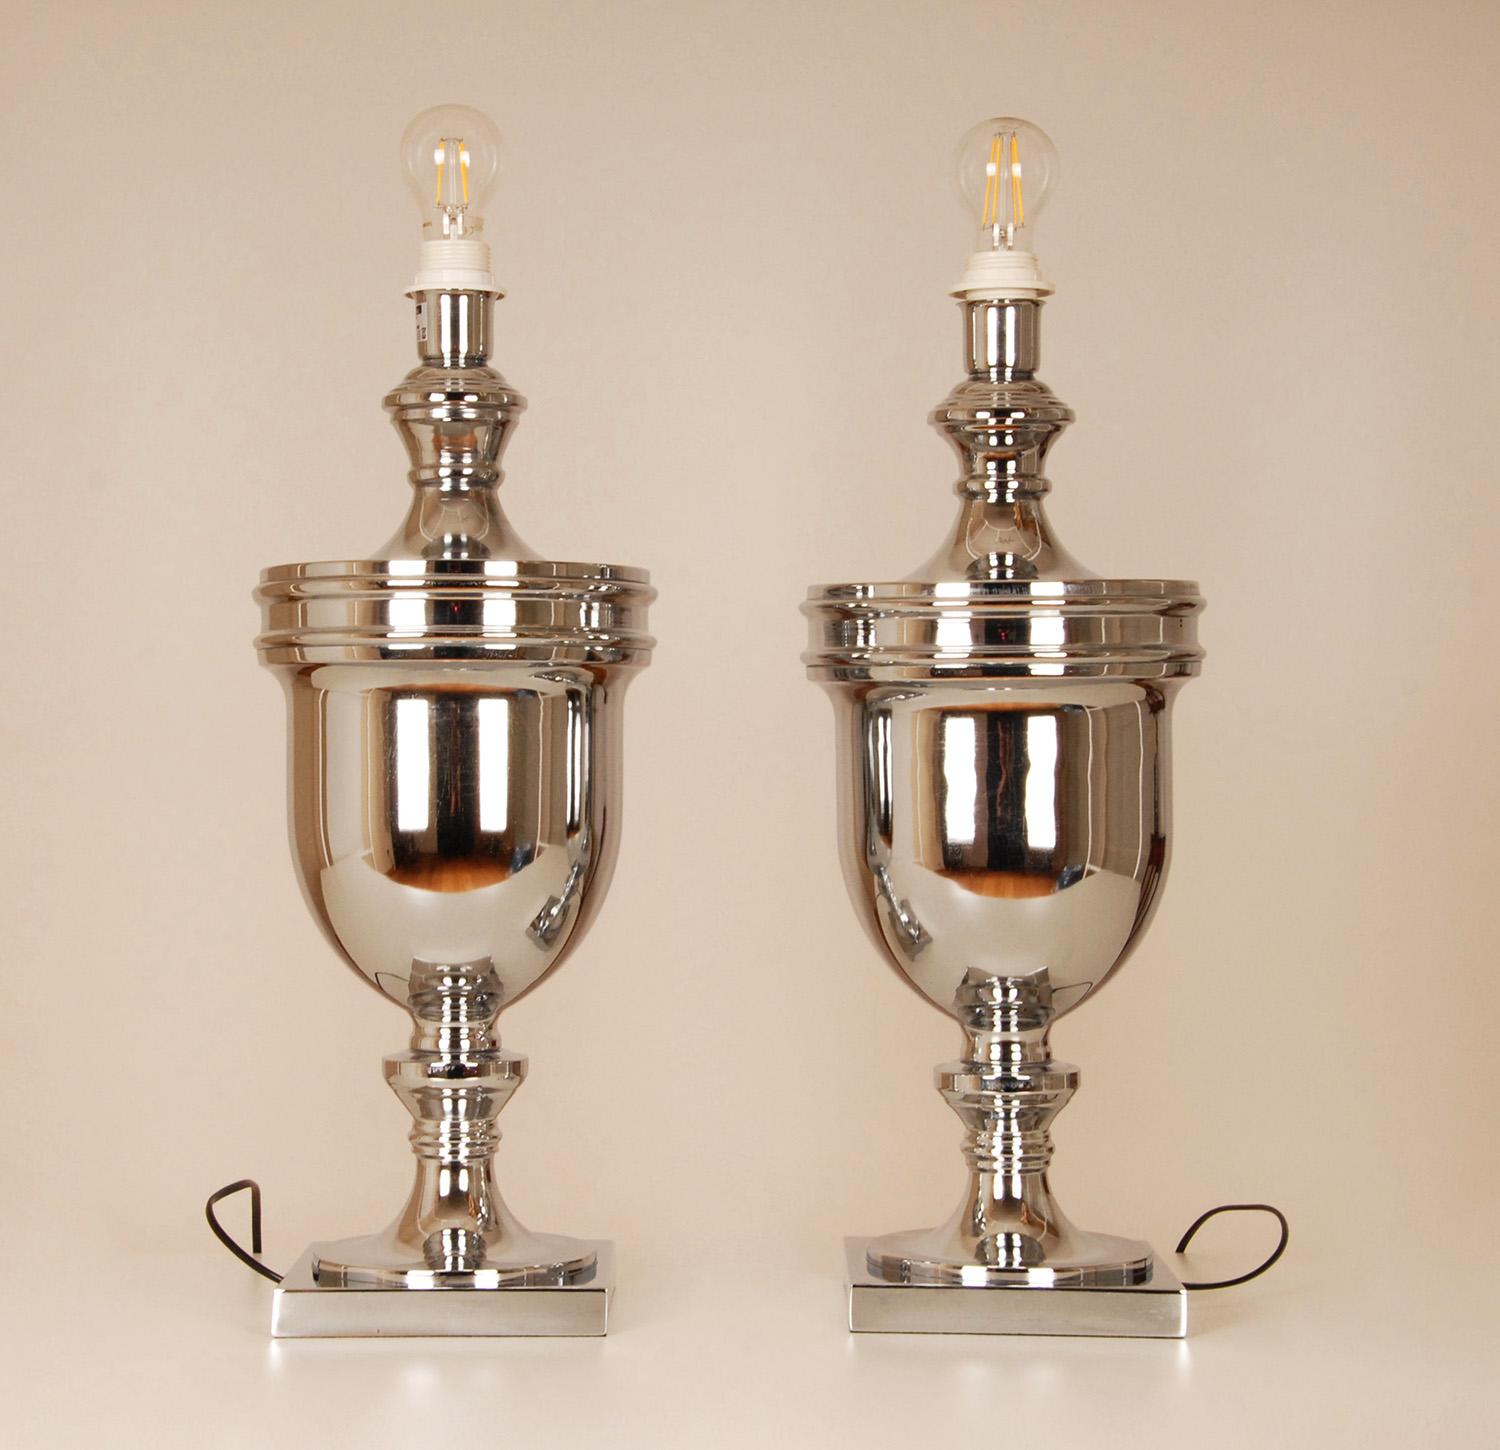 Tischlampen, Chrom, Silber, Königsblau, Moderne, hohe Tischlampen, Paar (20. Jahrhundert)